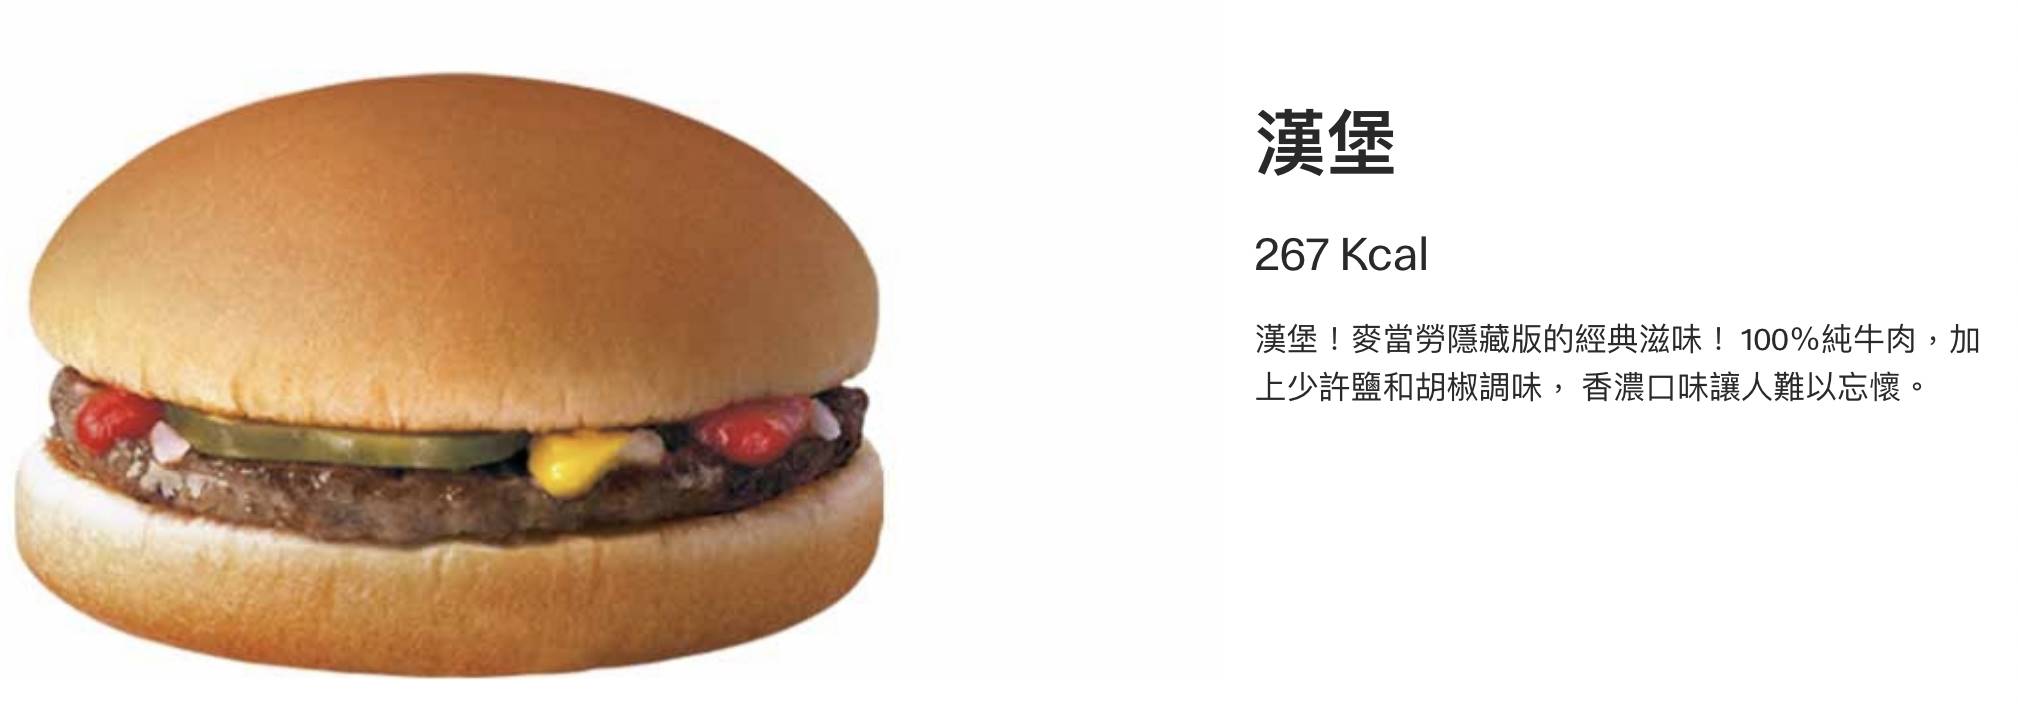 麥當勞隱藏菜單「漢堡」